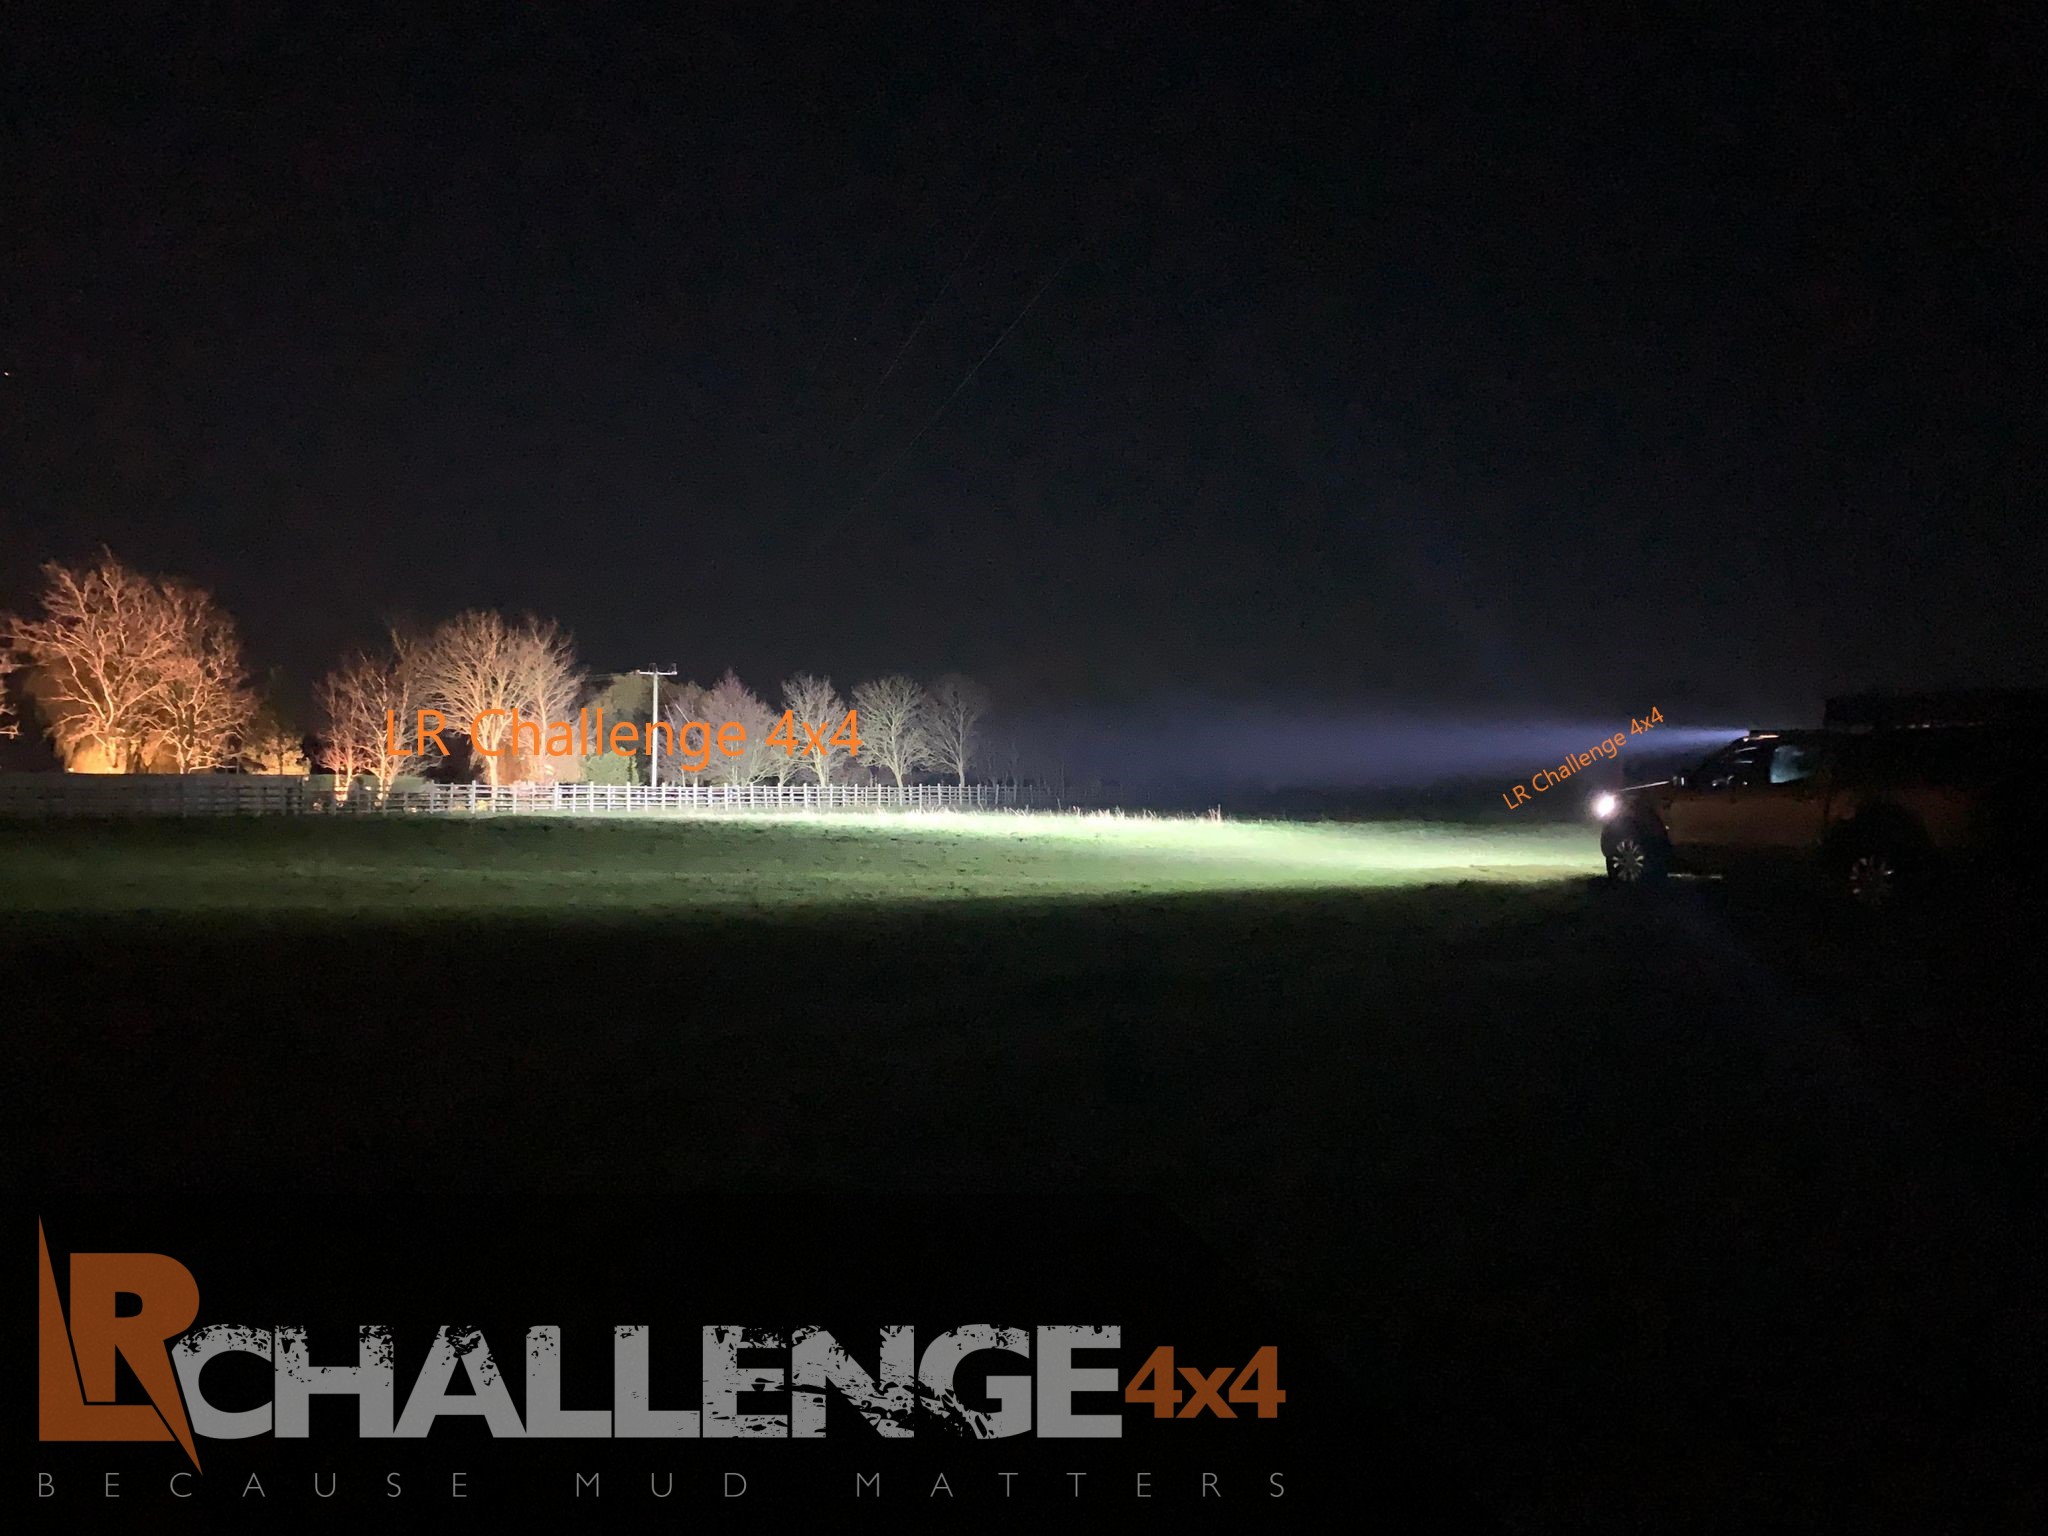 42 curved Monster 400 watt long distance LED Light Bar Ice white 12v 24v -  LR Challenge